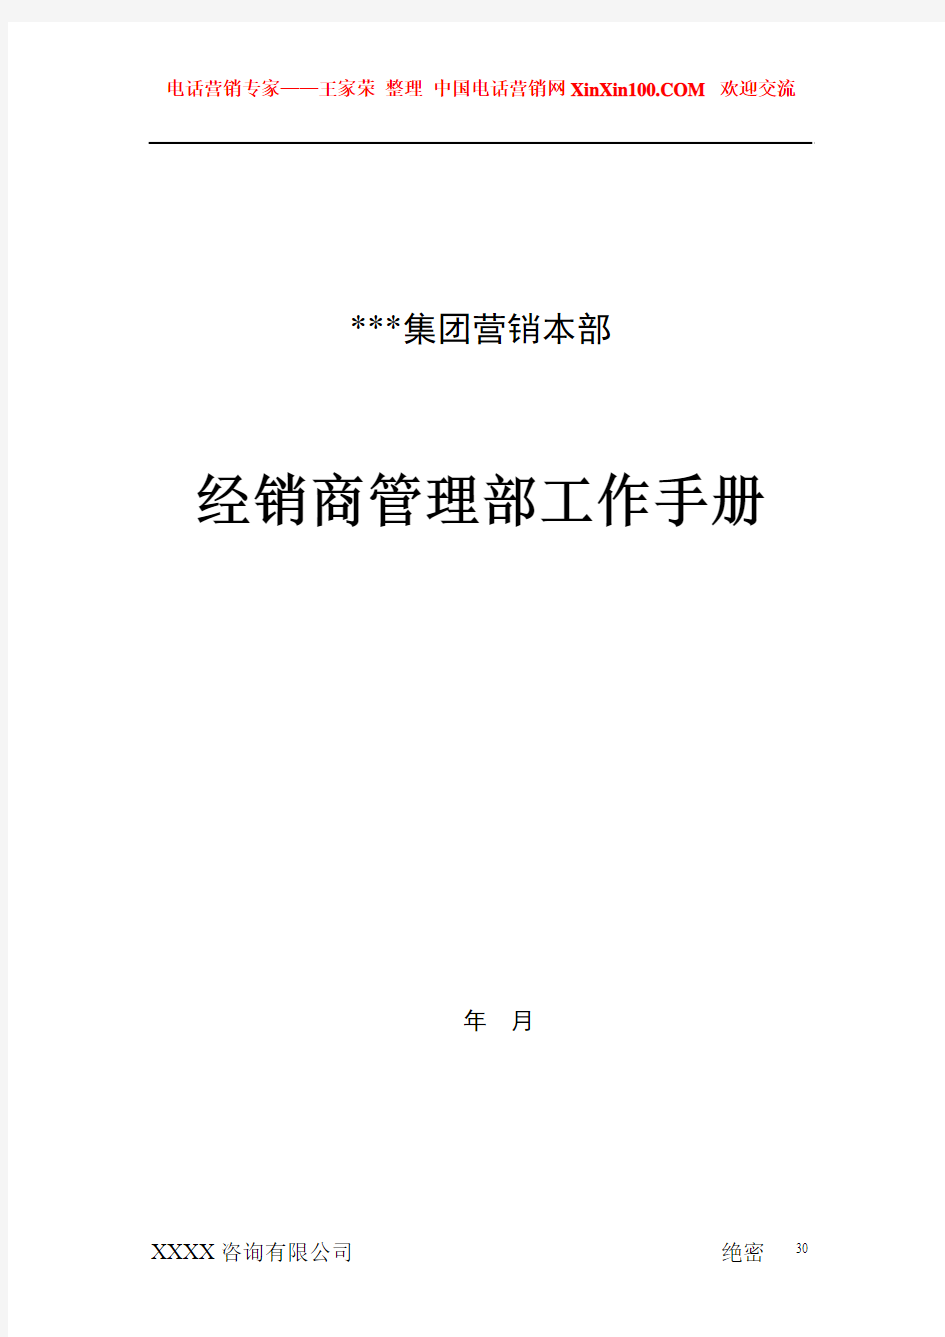 王家荣-XXX集团营销本部经销商管理部工作手册